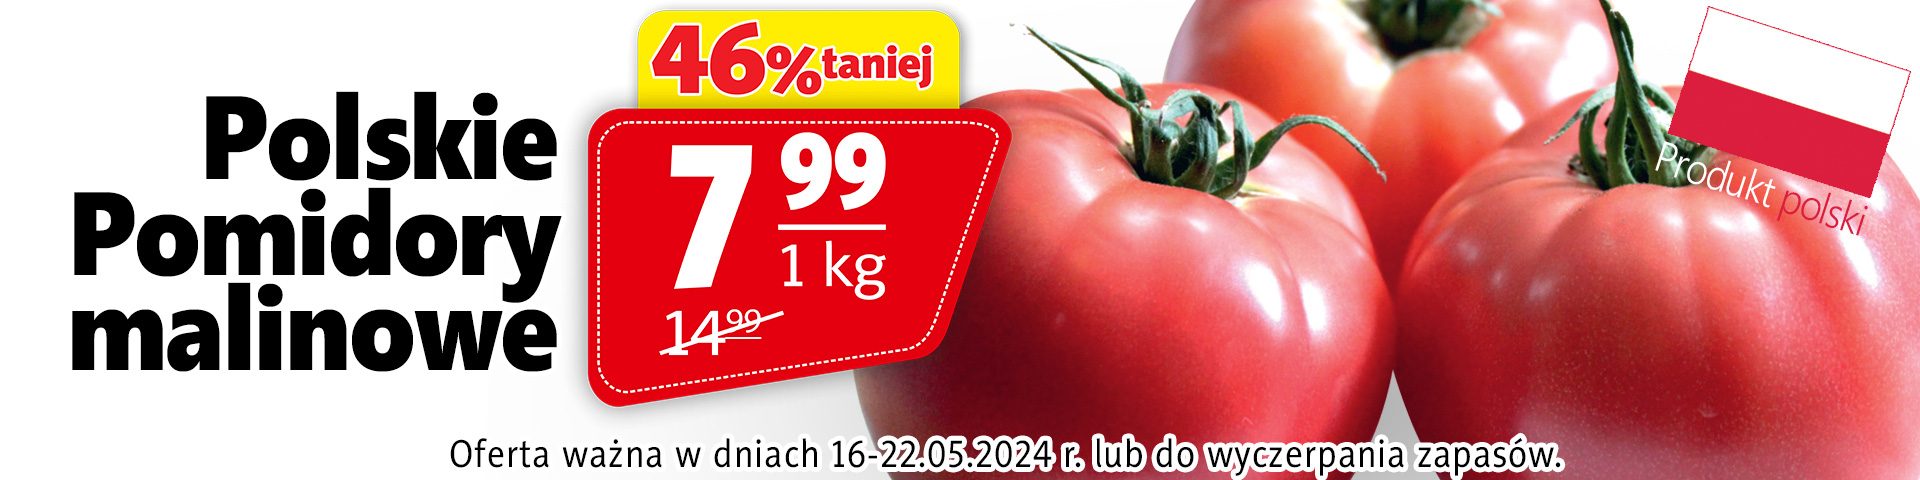 billboard_16_22_05_2024_polskie_pomidory_malinowe